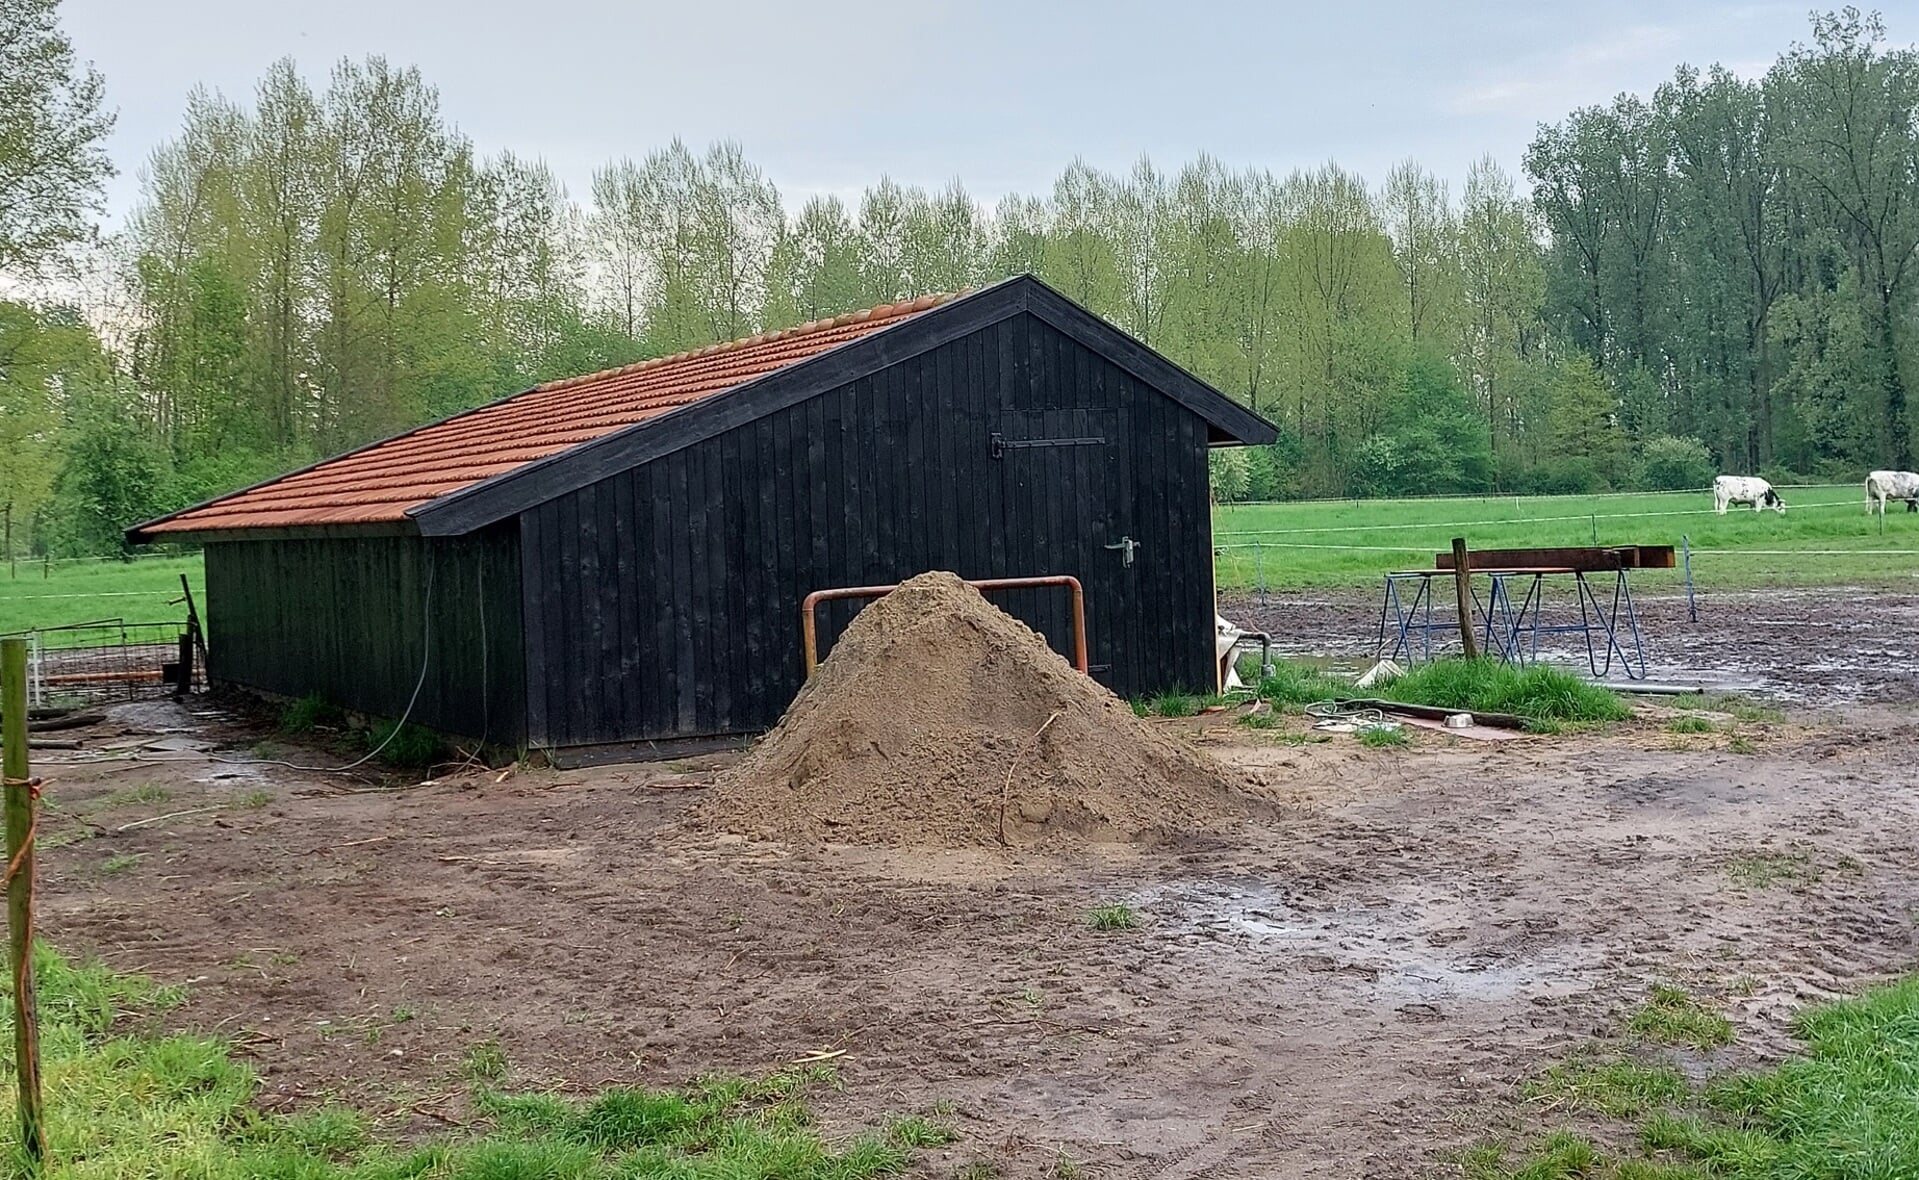 Het kippenhok van Kees en Simonia van der Heijden aan de Maai in buurtschap Kasteren is weer als nieuw. Dit type agrarische bijgebouwtje is kenmerkend voor de wederopbouwperiode. 